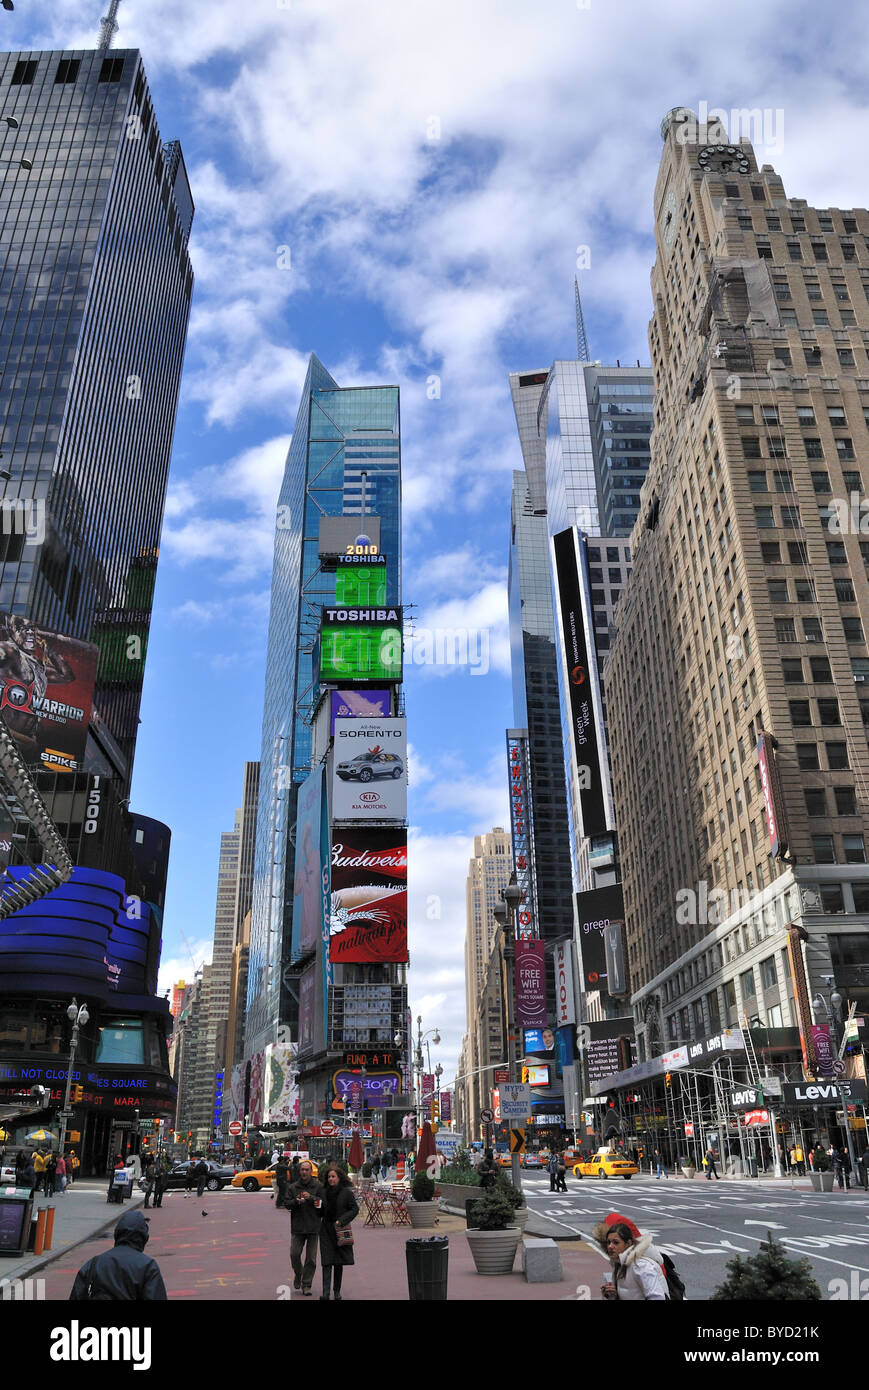 La storica Times Square a New York City con alte e i cartelloni pubblicitari di marche conosciute. Foto Stock